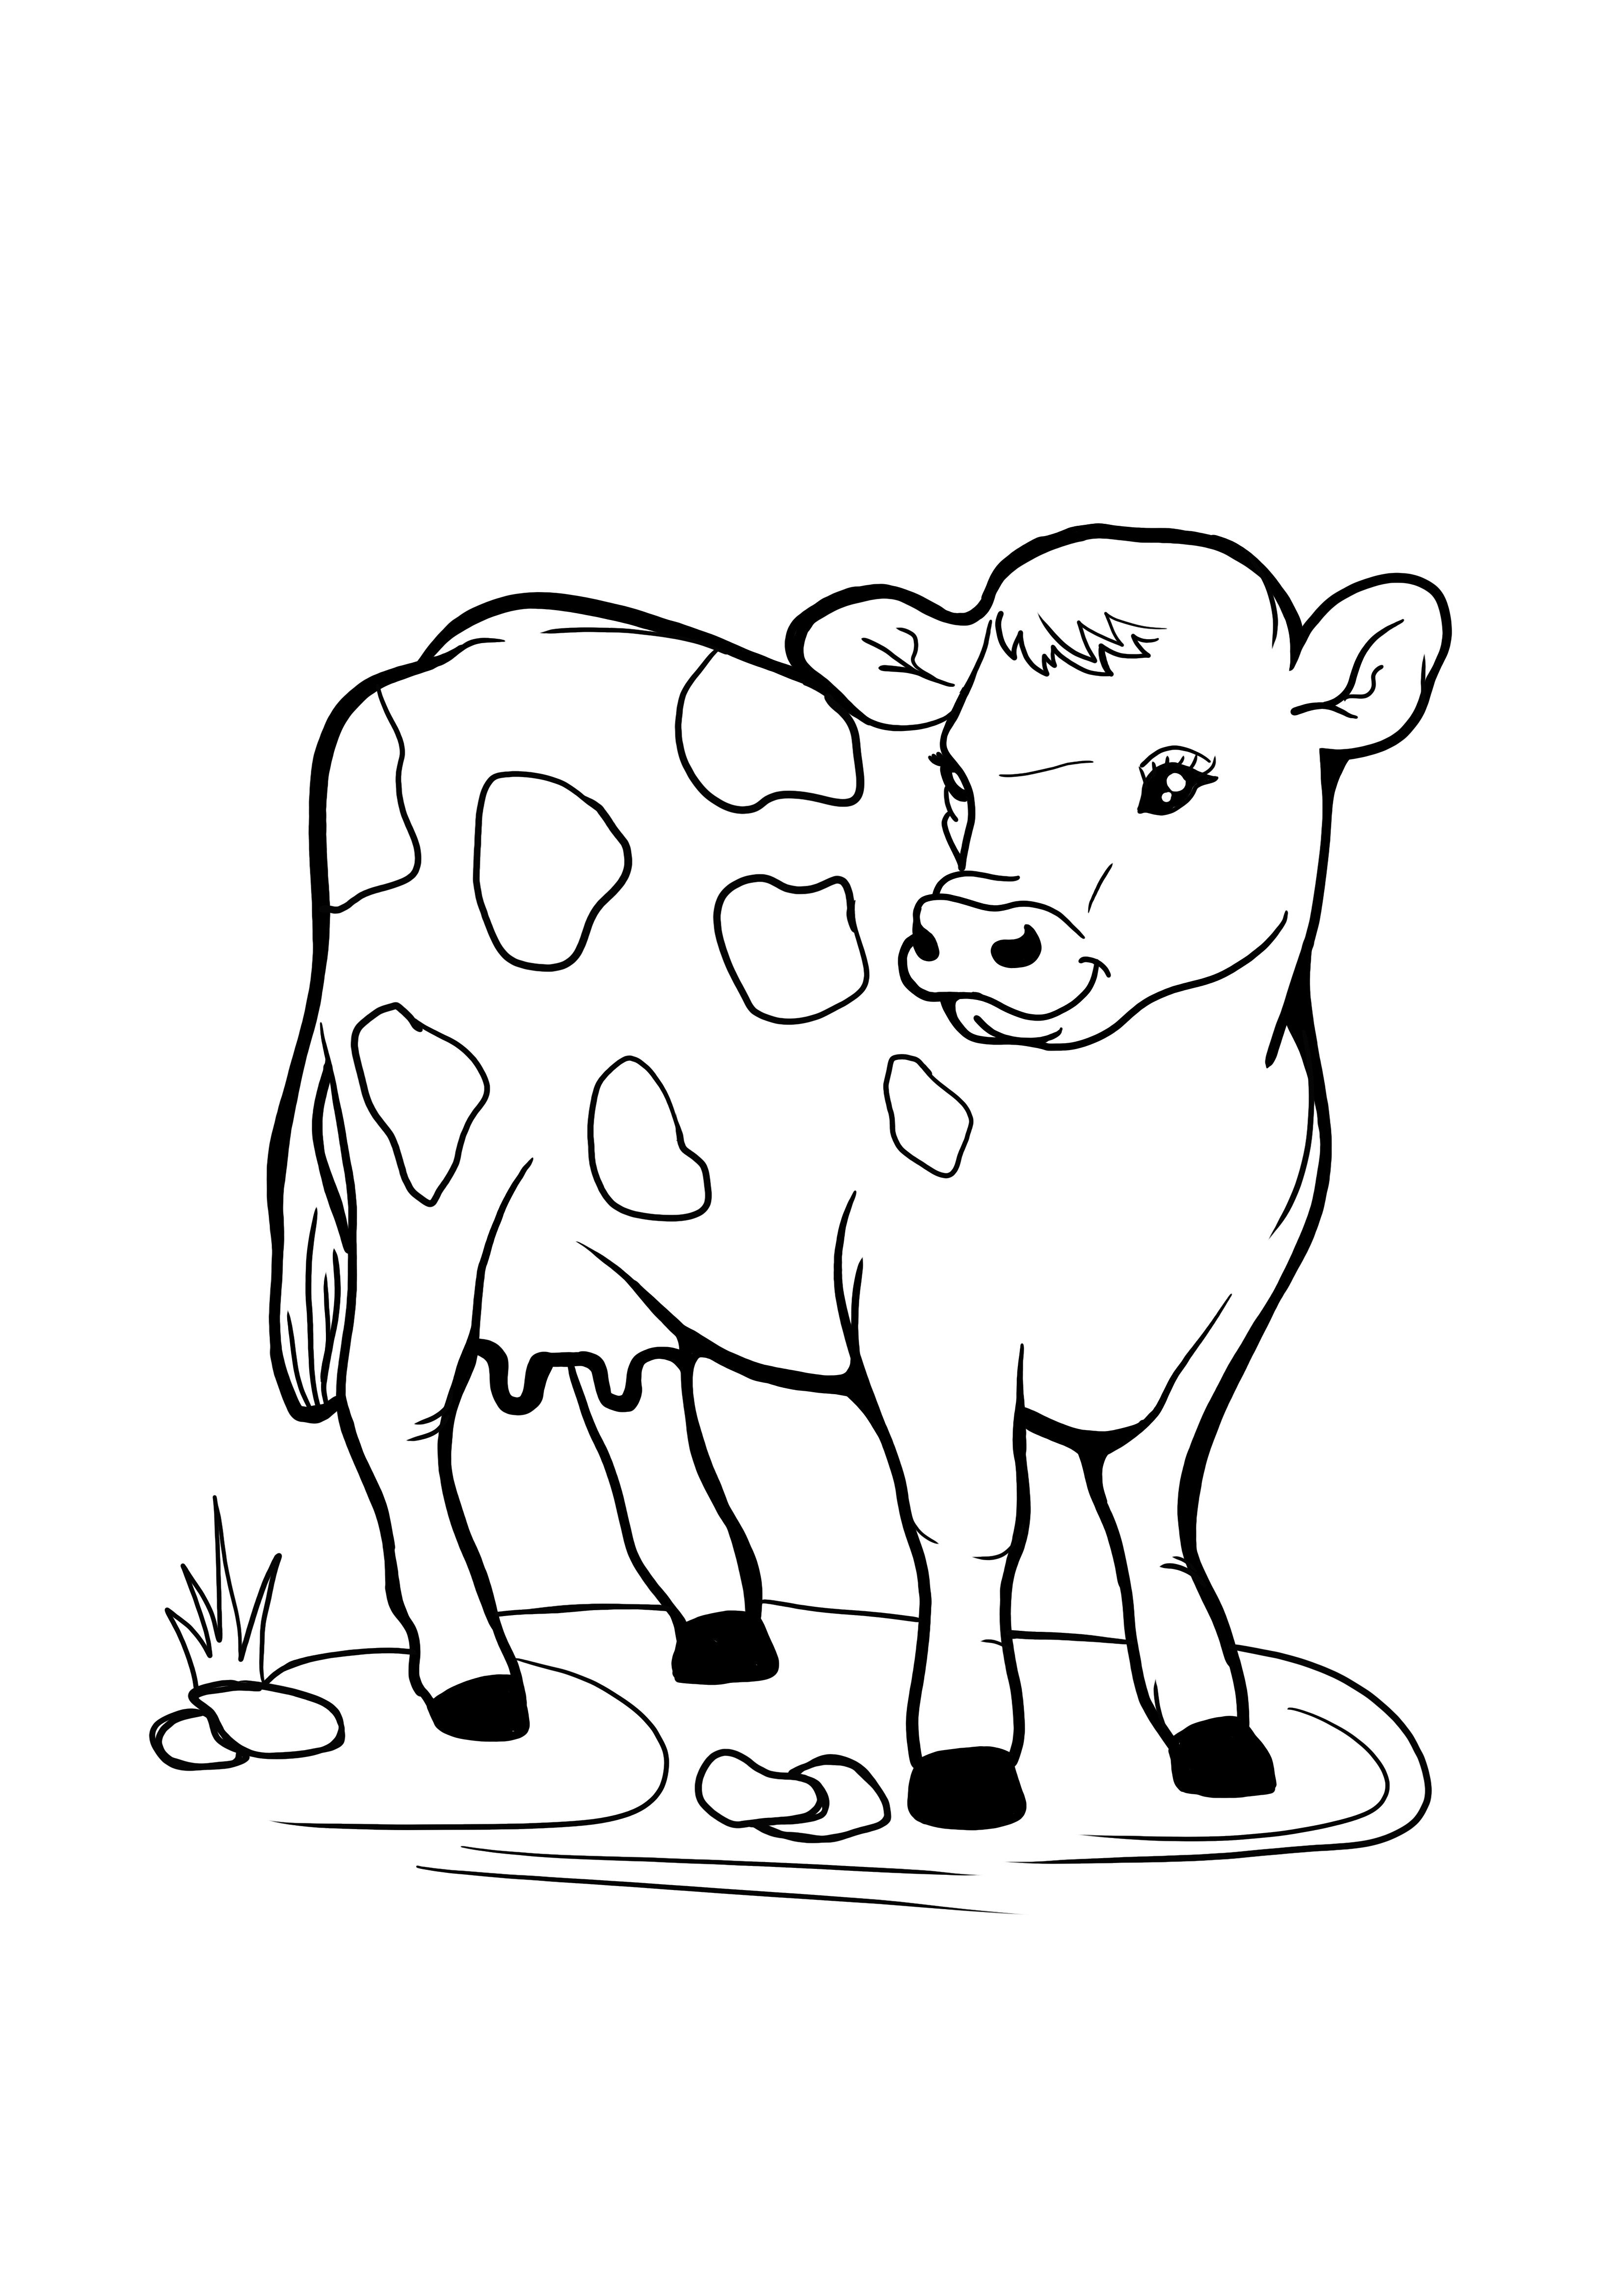 pasąca się krowa łatwa do kolorowania obraz